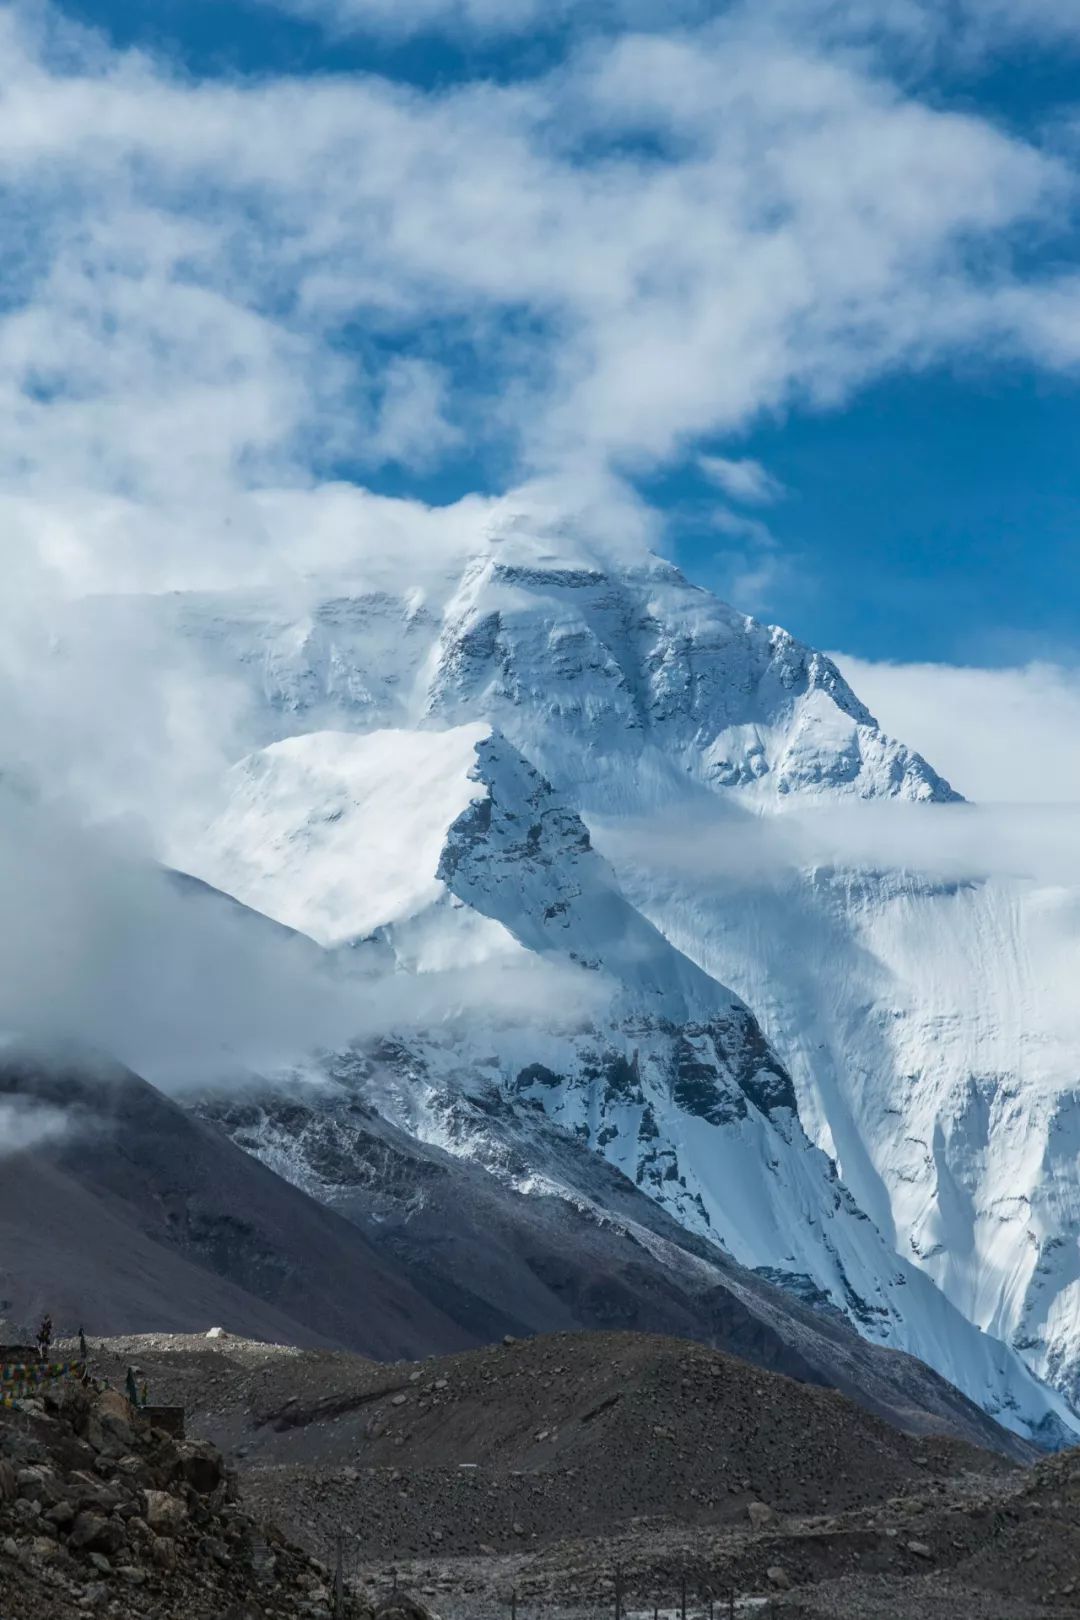 【携程攻略】定日珠峰大本营景点,珠峰大本营海拔5200米, 个人认为很值得去, 其一, 从…